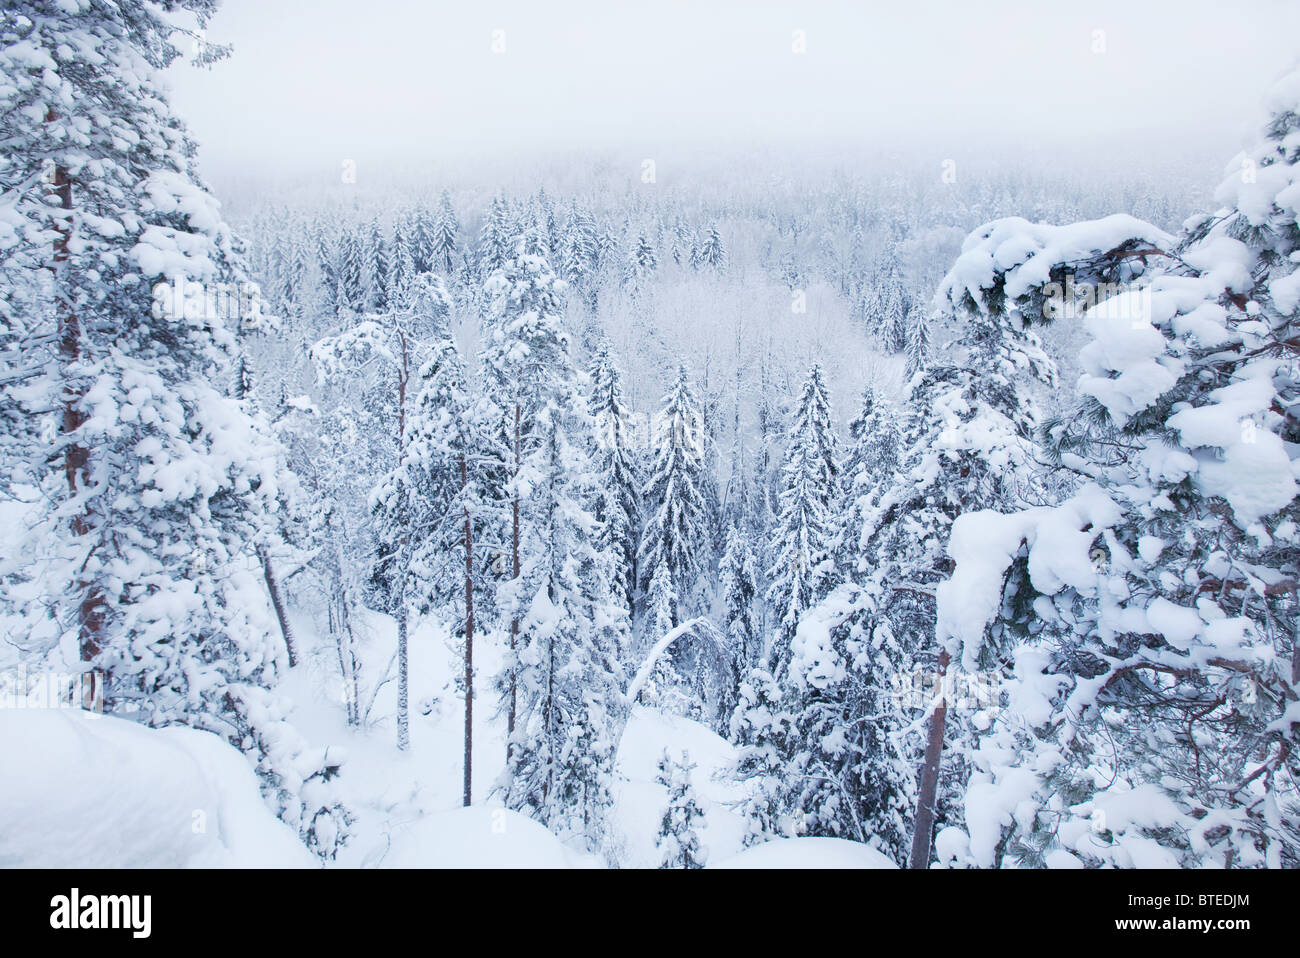 En invierno, el Parque Nacional Nuuksio Espoo, Finlandia Foto de stock